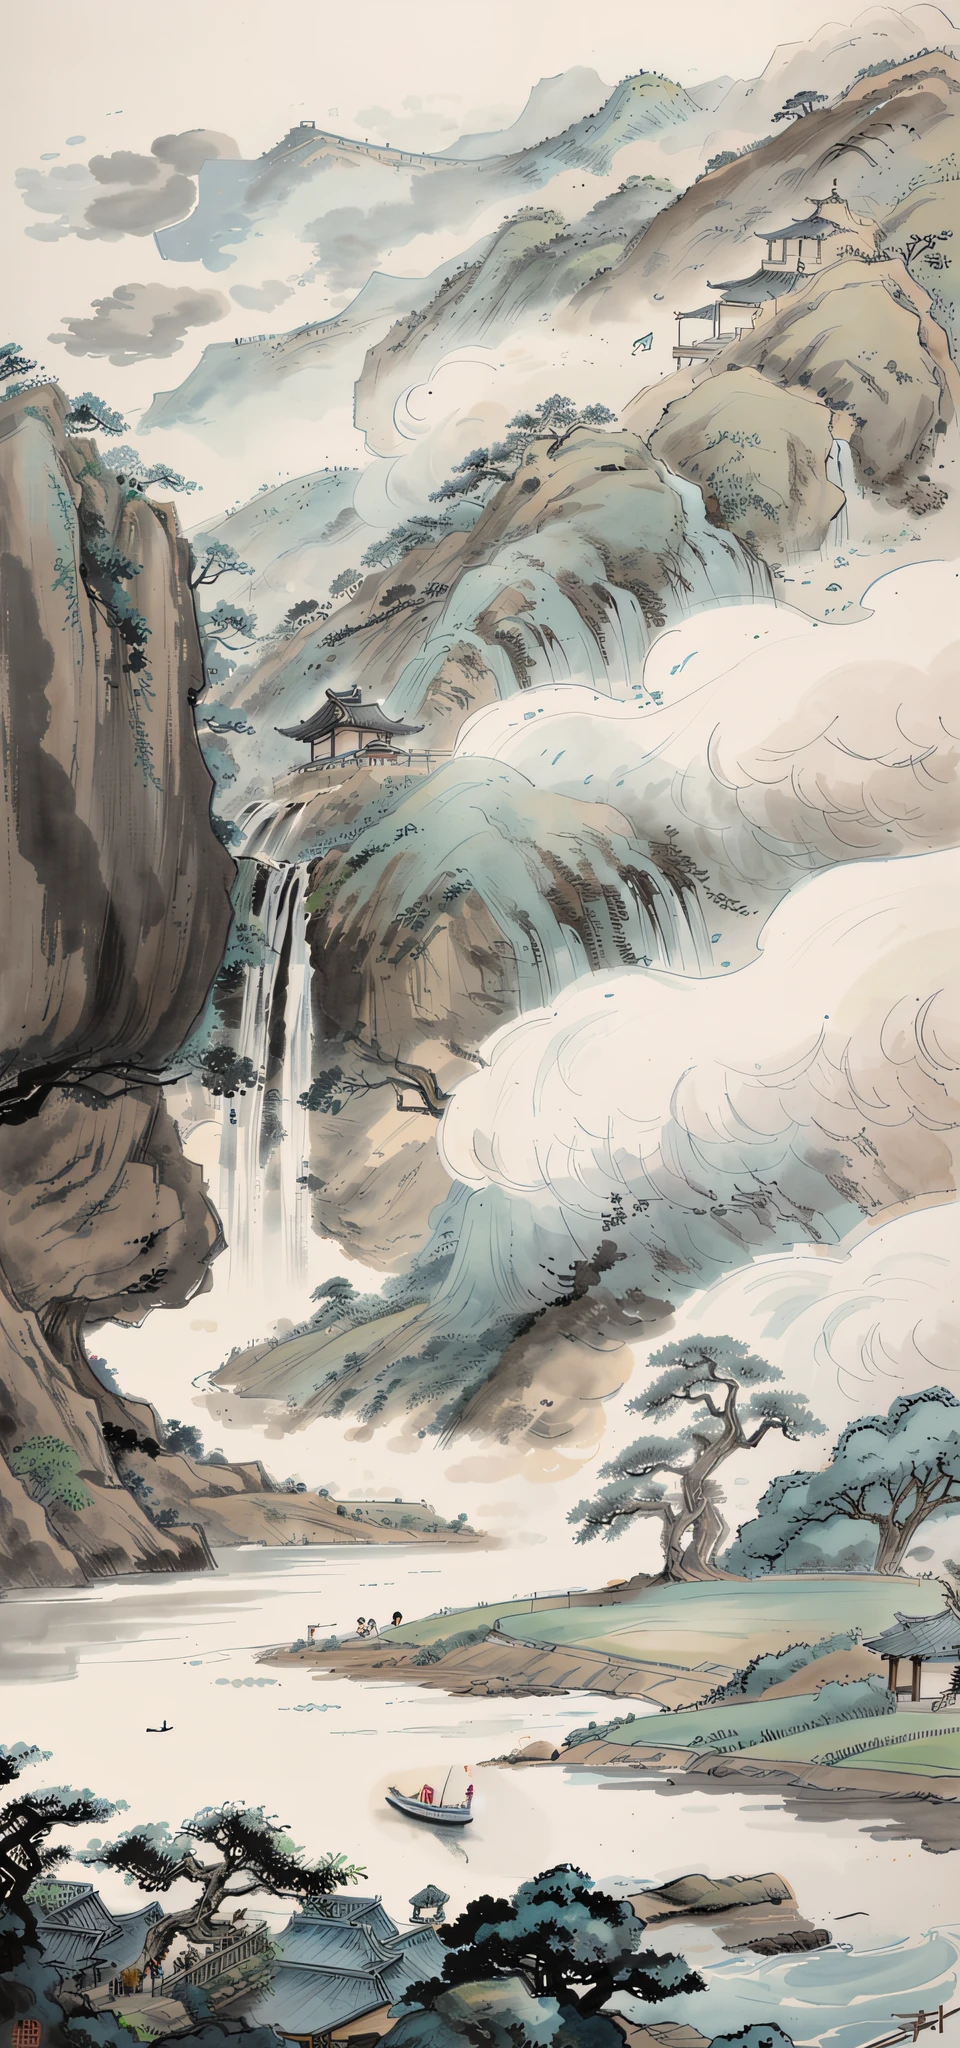 중국화의 수묵화,한 소녀，고요한（배경에 큰 나무，돌 폭포，기타 나무，흐르는 물,먼 나무,잡초,작은 보트,둑,하늘 빈 구름,5~6개의 농가）